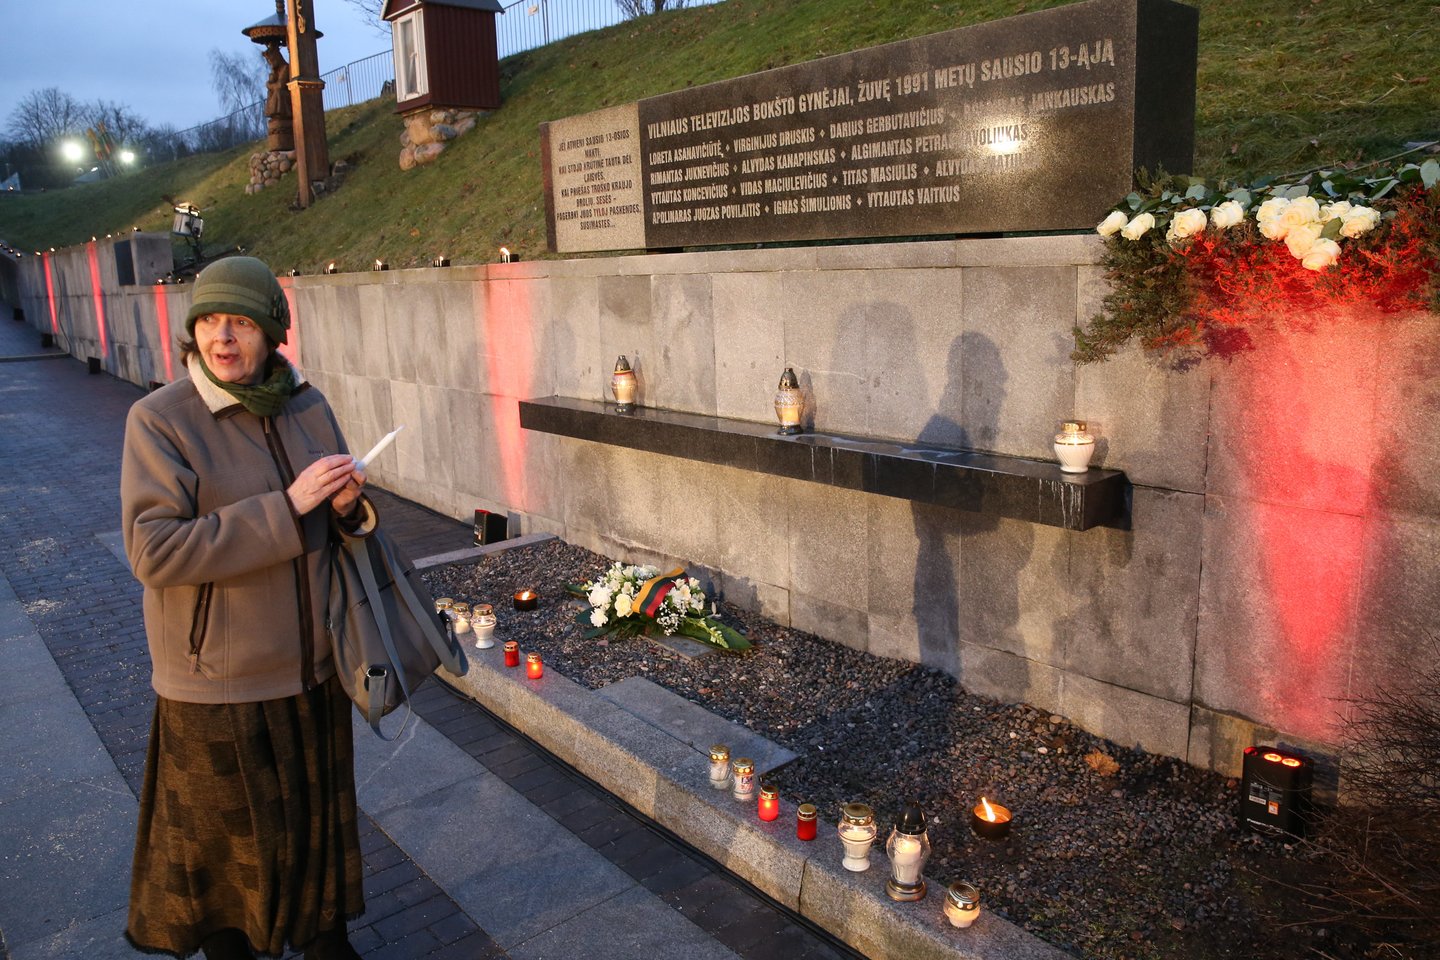 Vilniuje pagerbiant Sausio 13-ąją žuvusius laisvės gynėjus sekmadienį degami atminimo laužai.<br> R.Danisevičiaus nuotr.